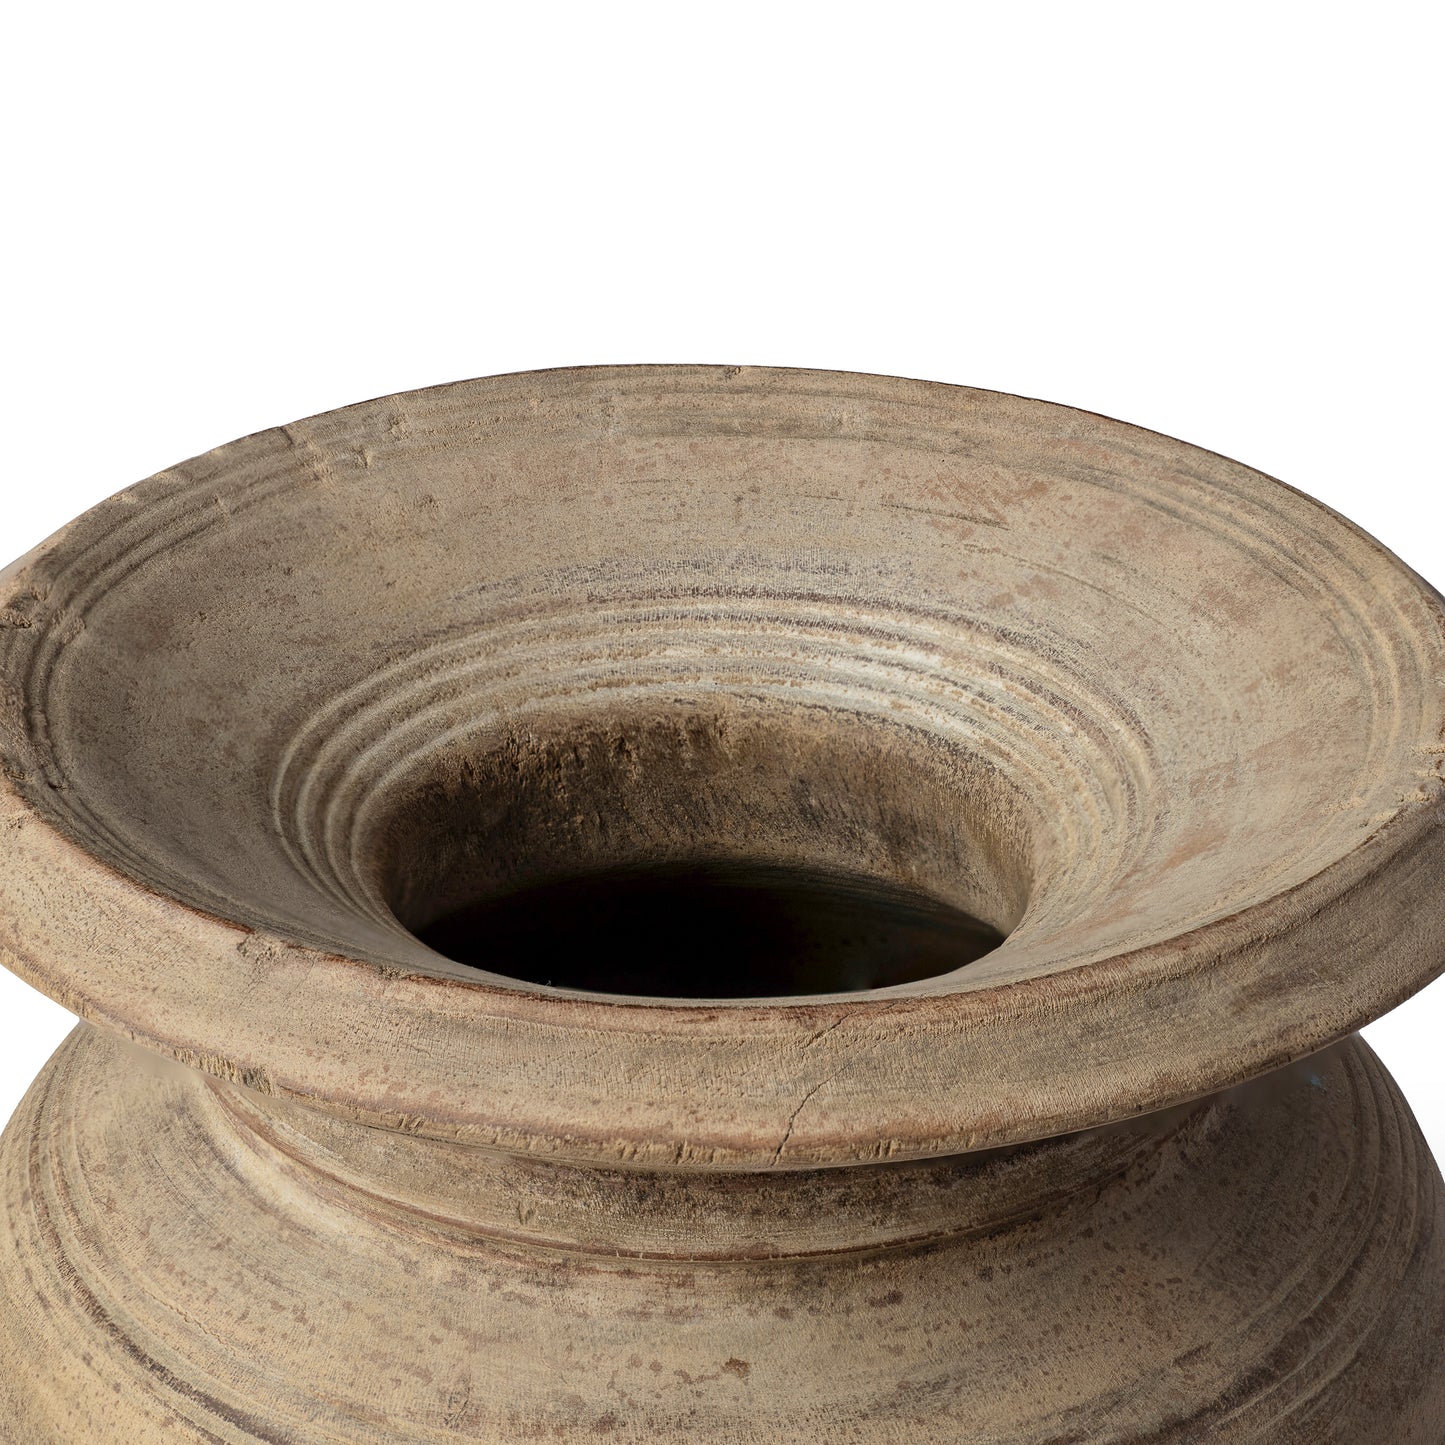 Saroj Found Teak Wood Oil Pot